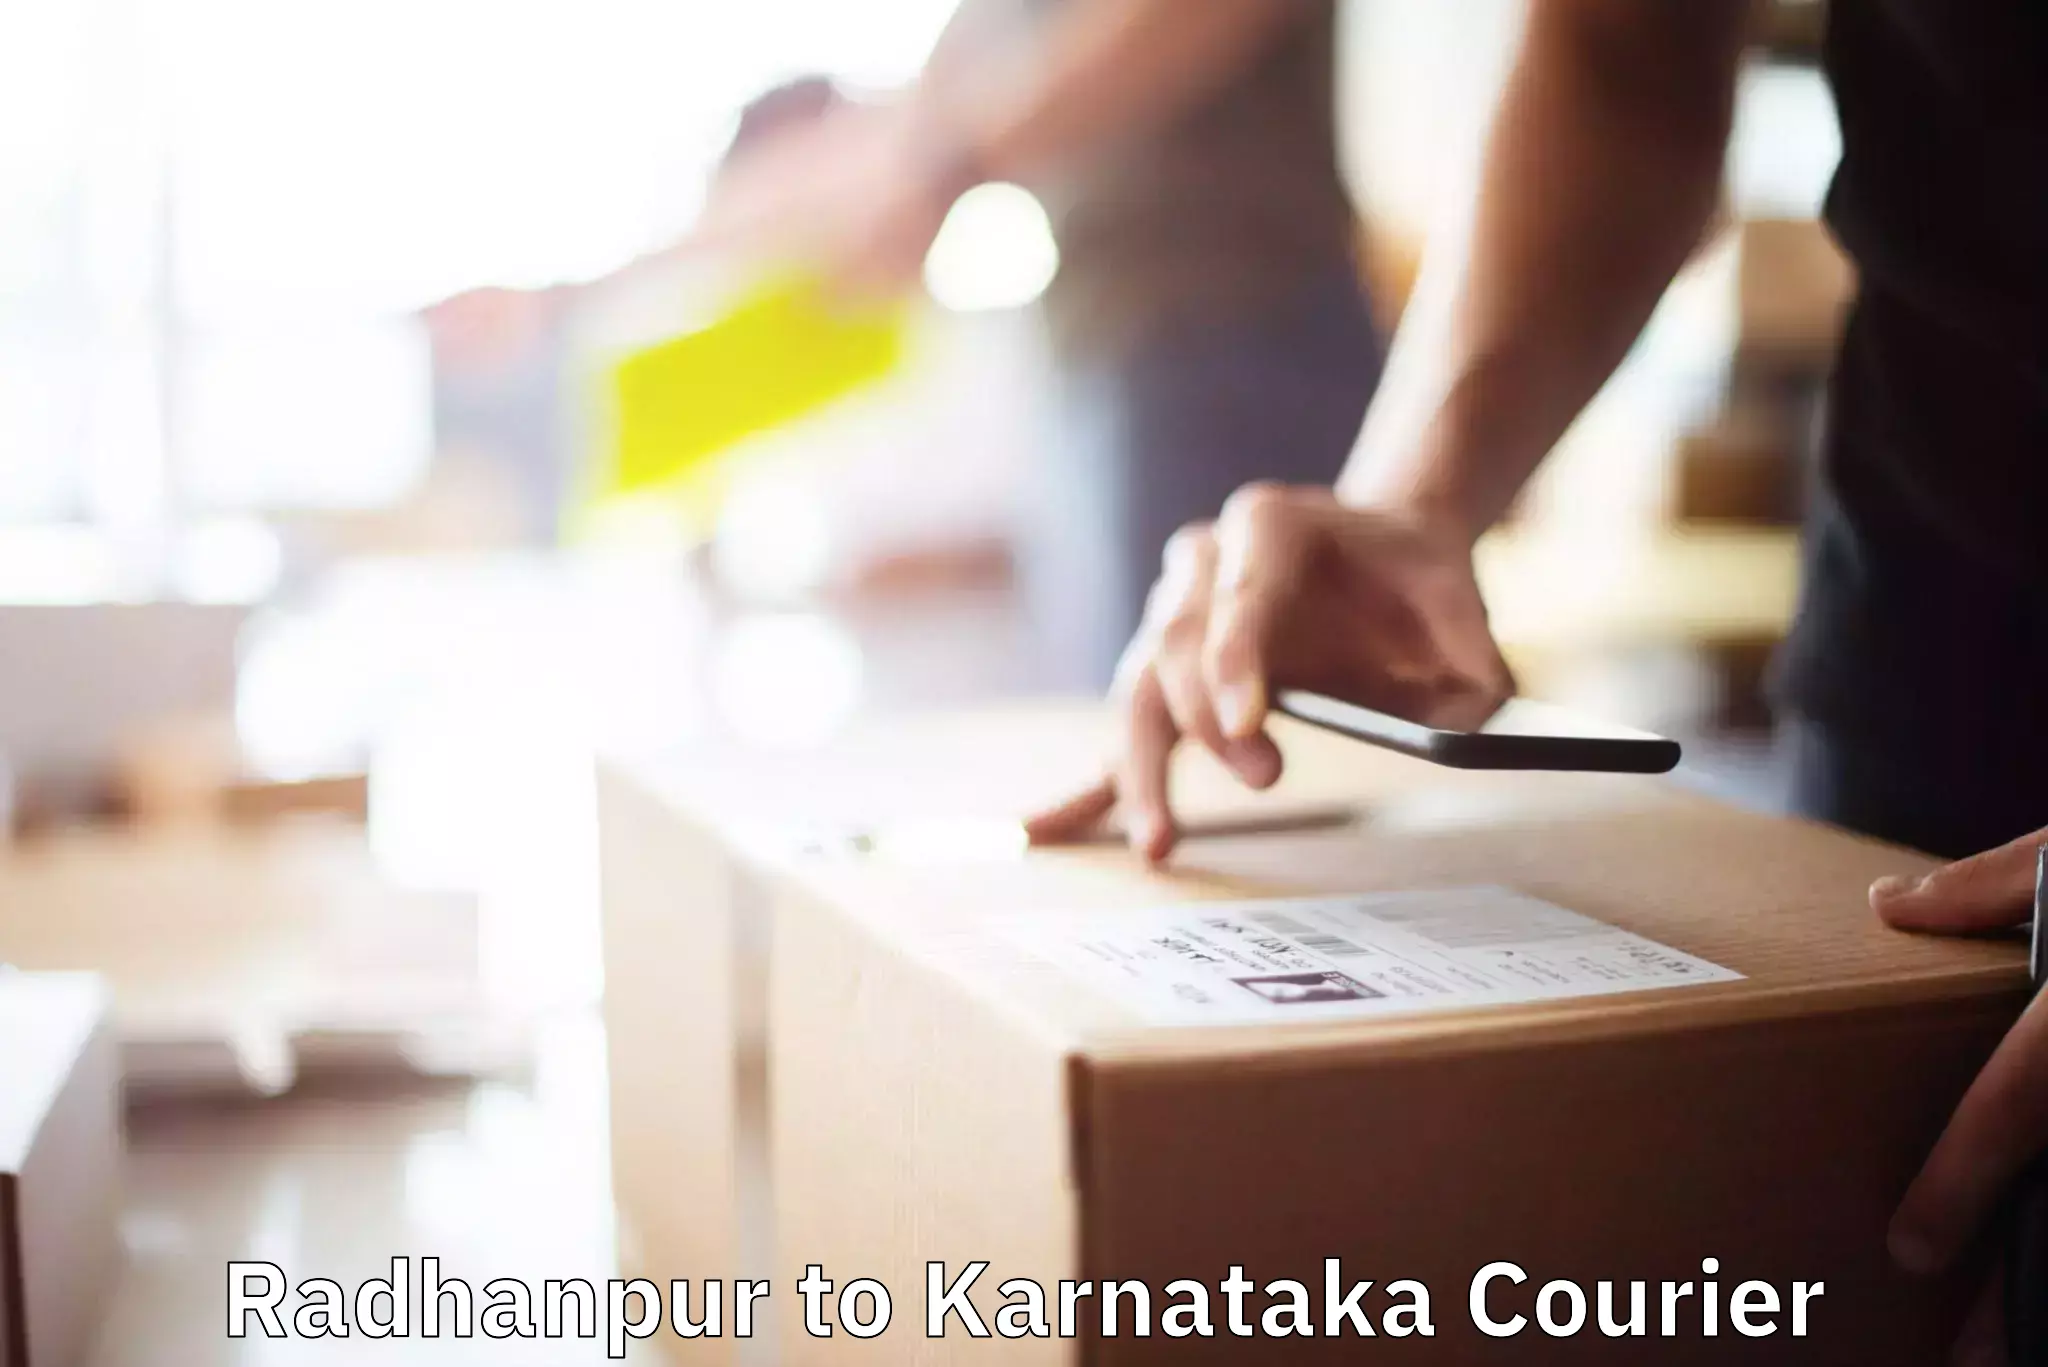 Furniture moving plans Radhanpur to Karnataka